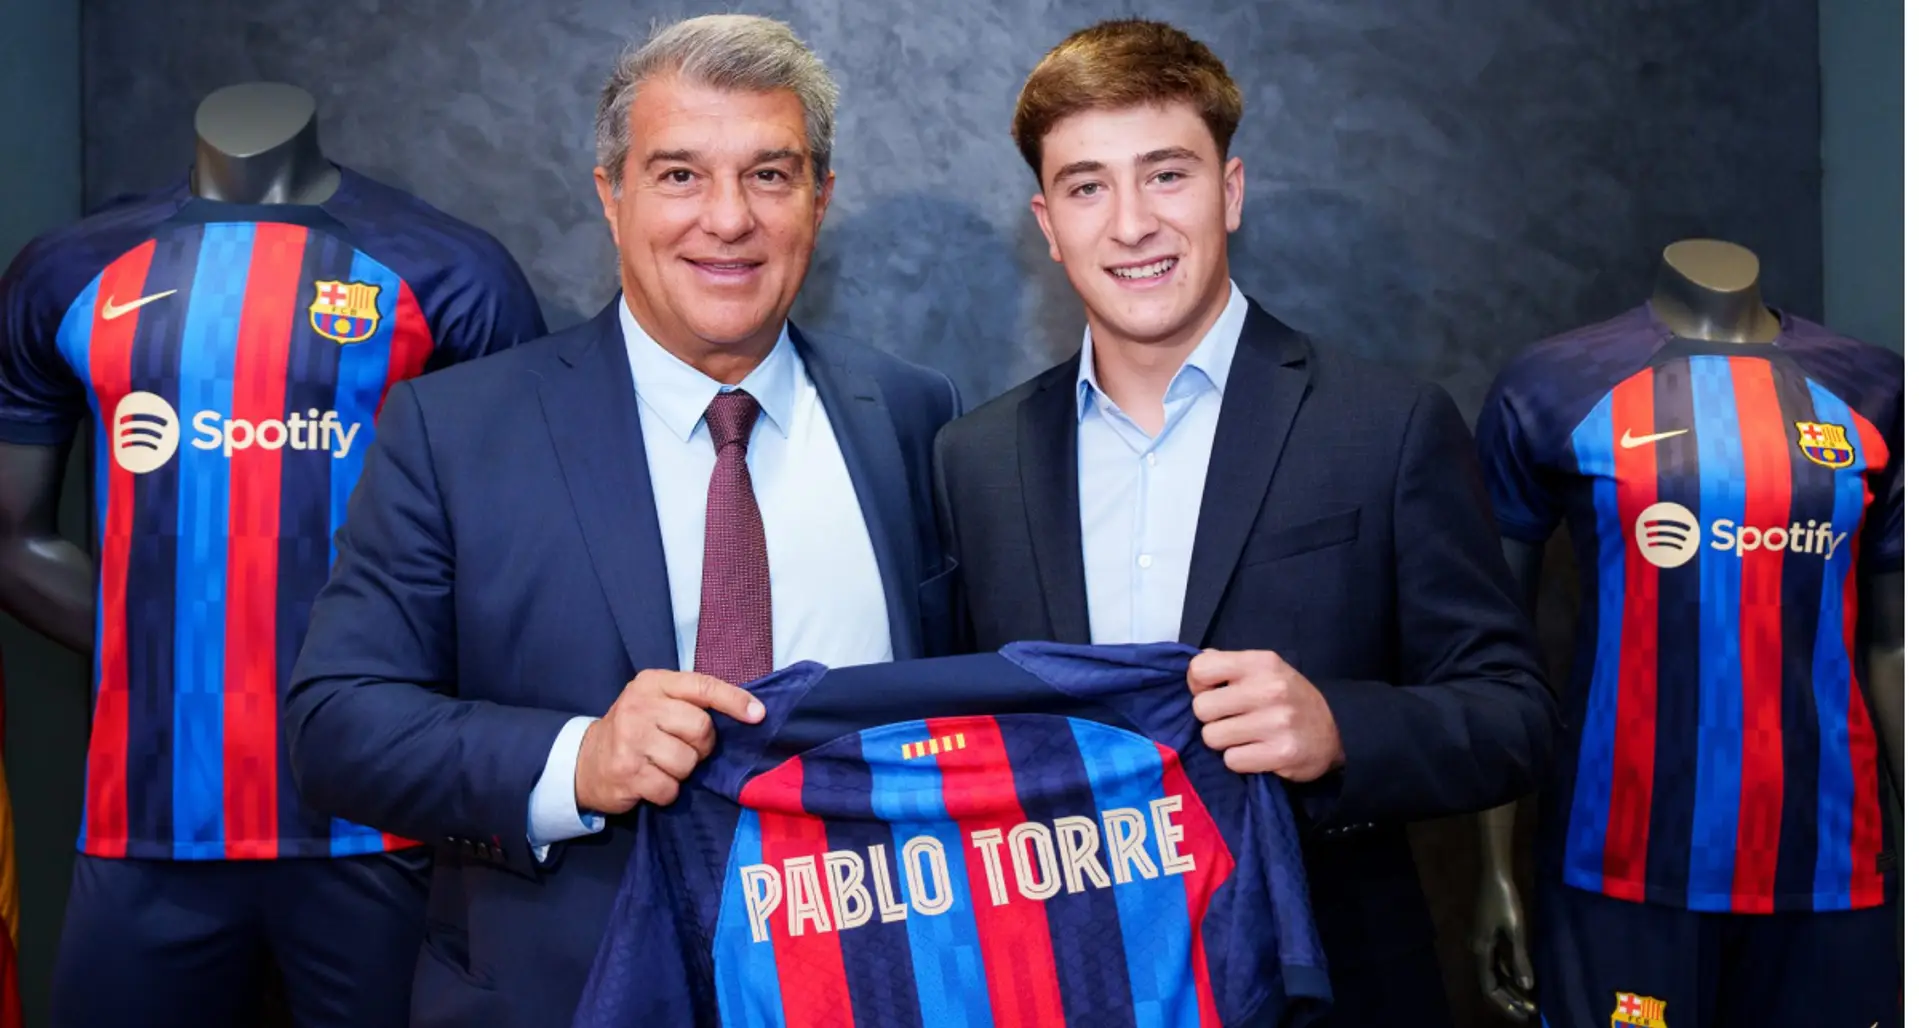 OFFICIEL: Barcelone dévoile sa nouvelle recrue Pablo Torre